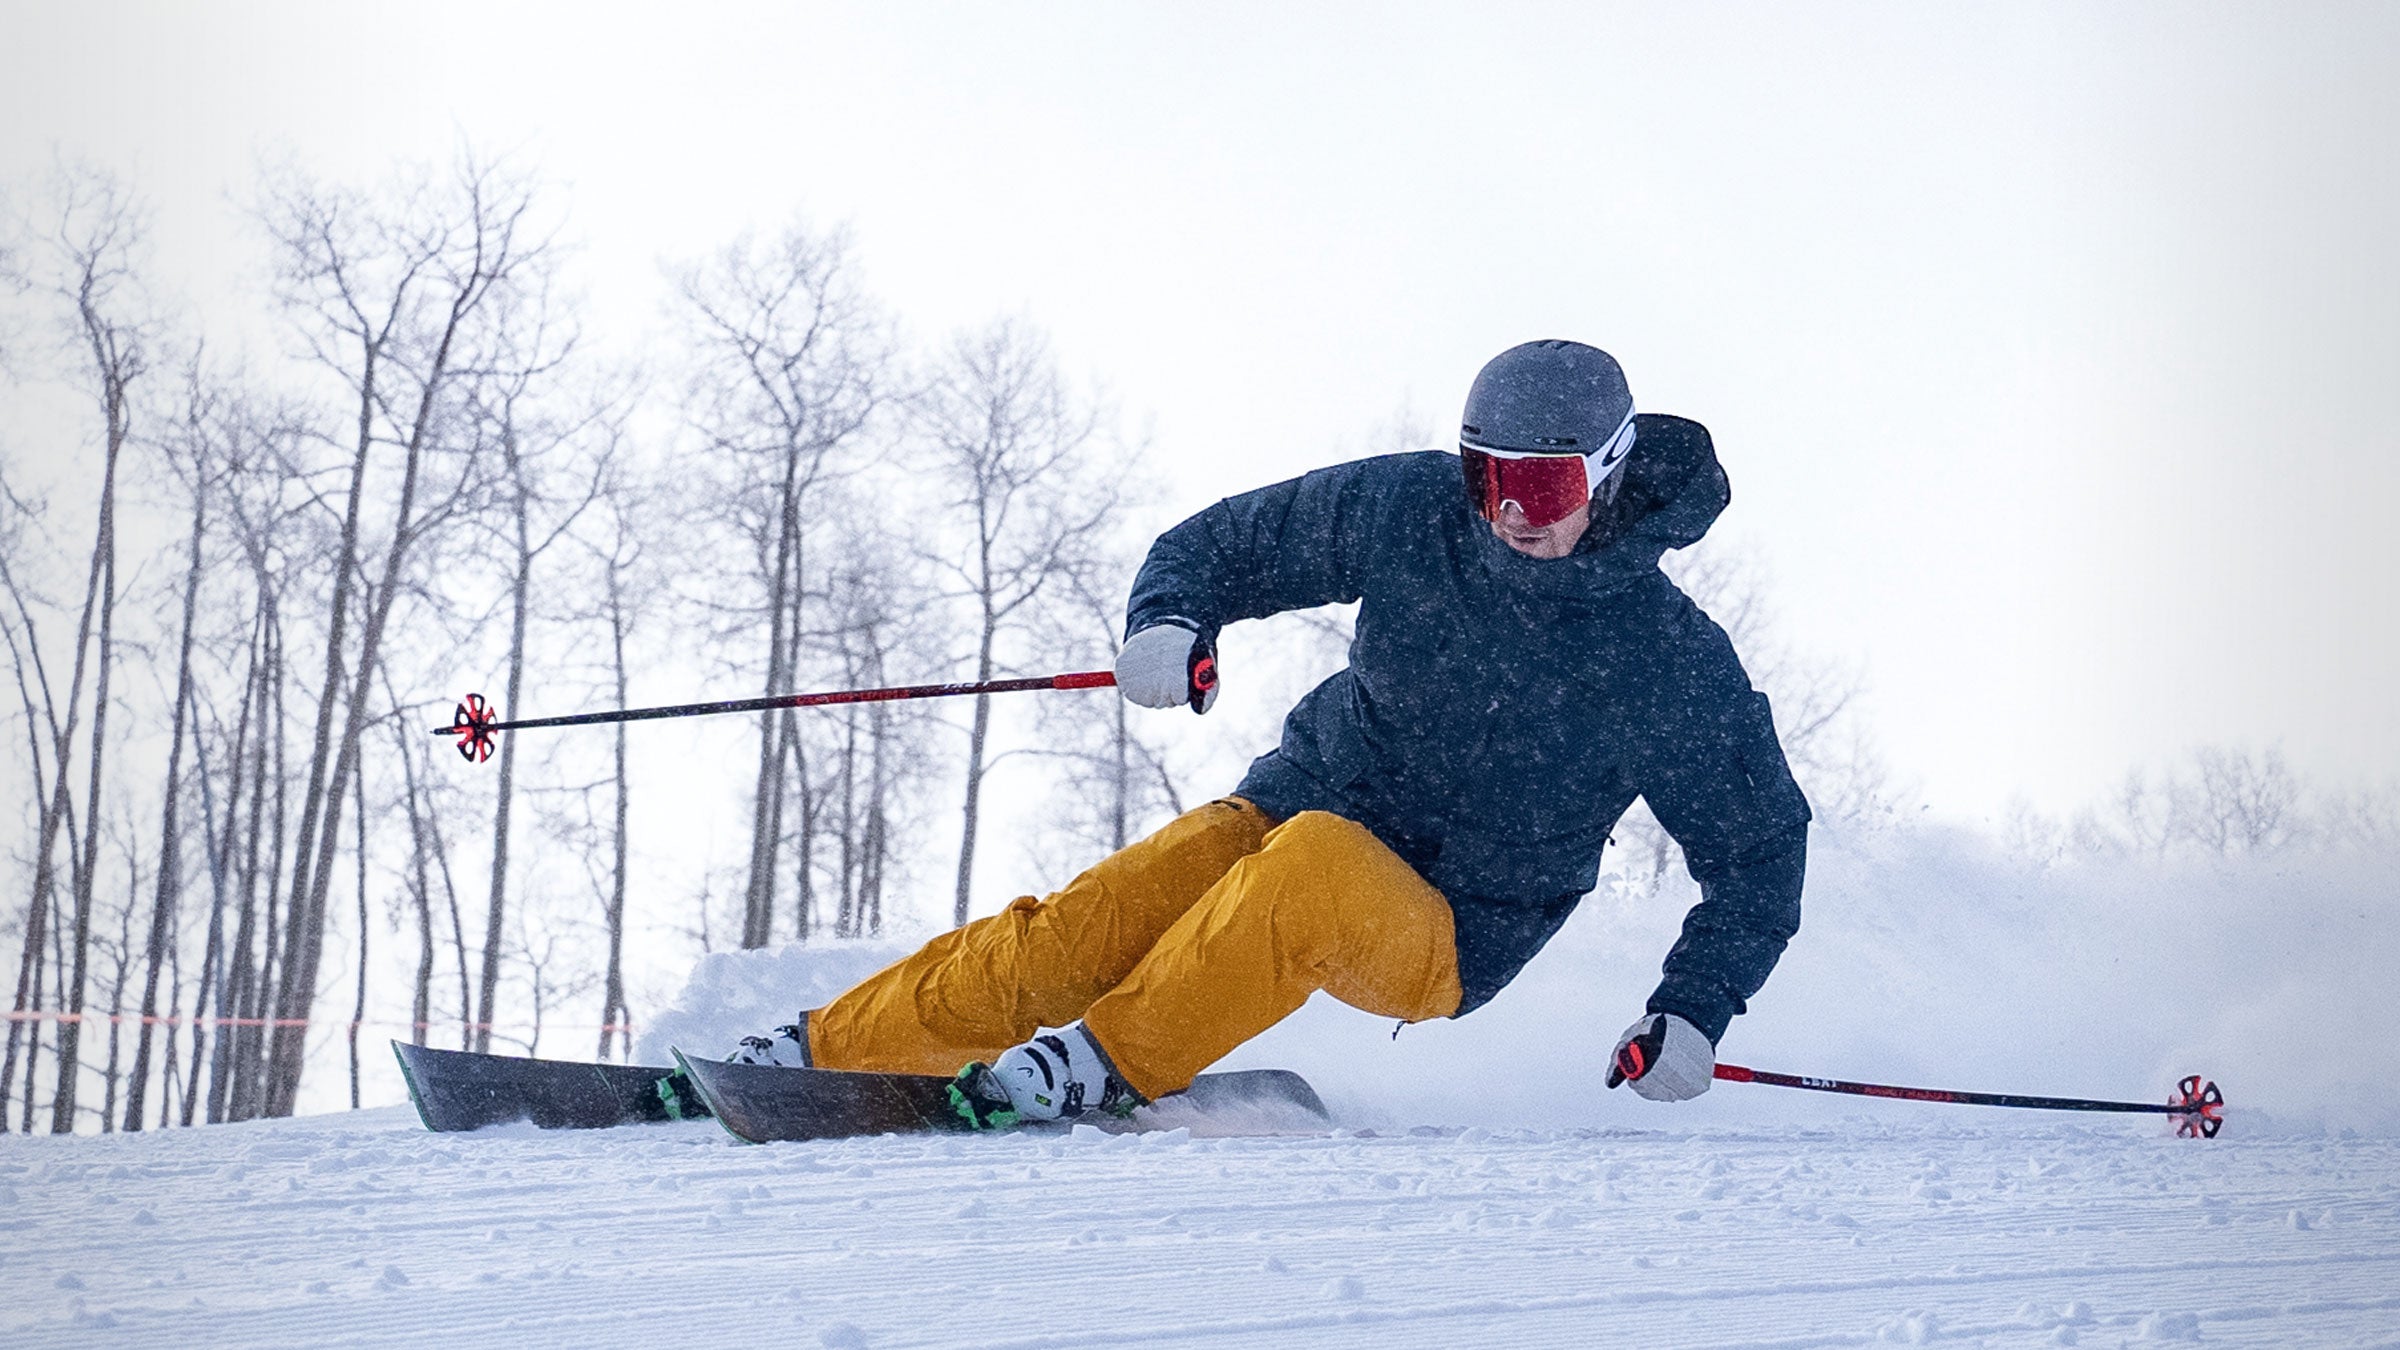 skier carving turn in turmeric capitol ski pant